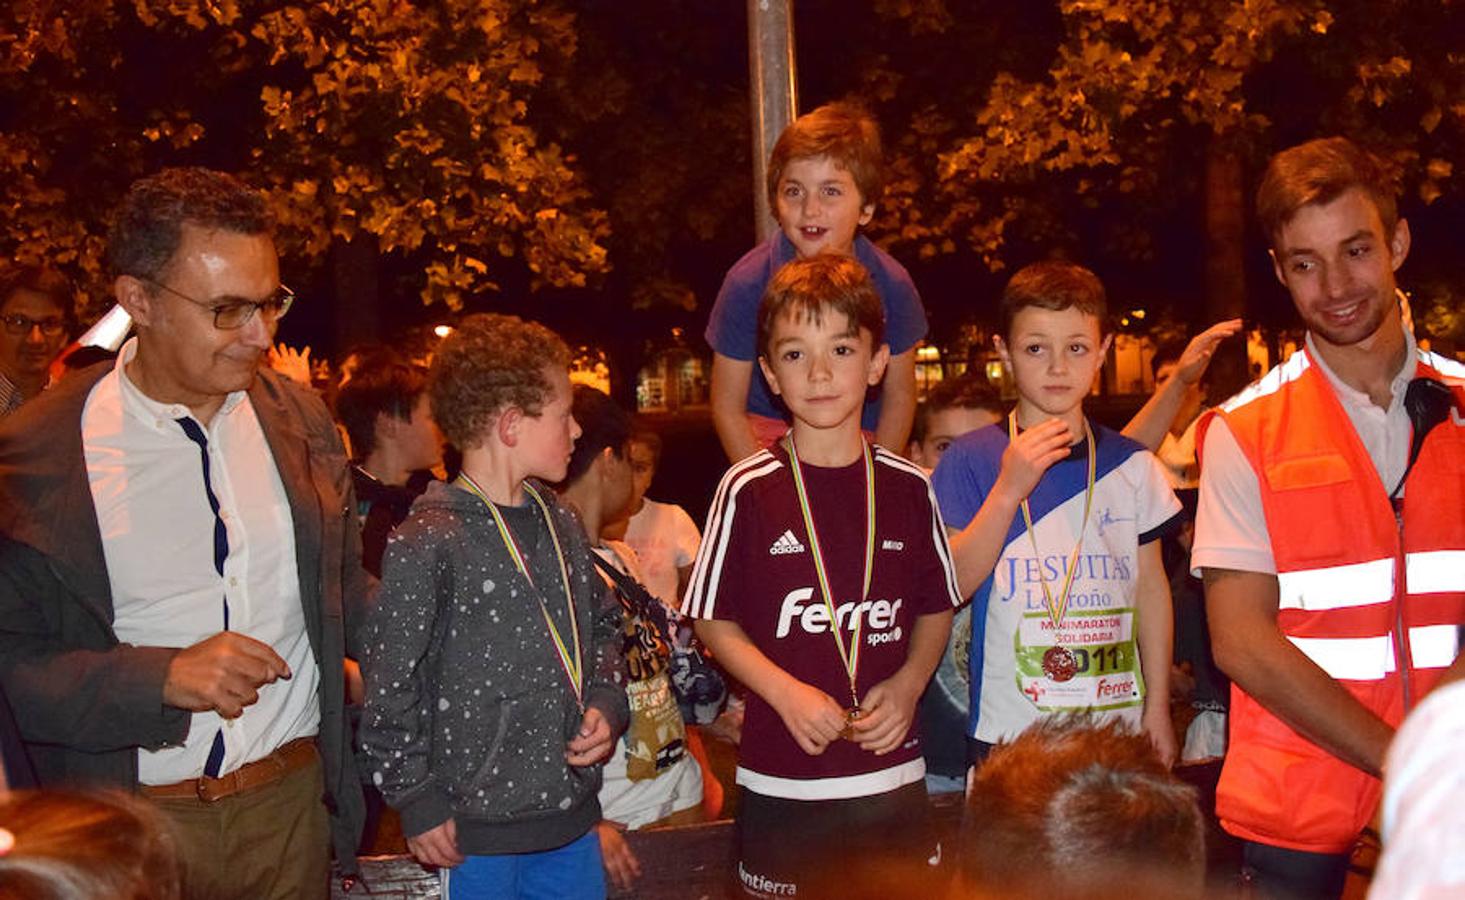 Alrededor de 300 niños tomaron parte en los actos paralelos relacionados con la Maratón que este domingo se celebra en Logroño. Amor por el deporte, participación, saber perder y también ganar... 